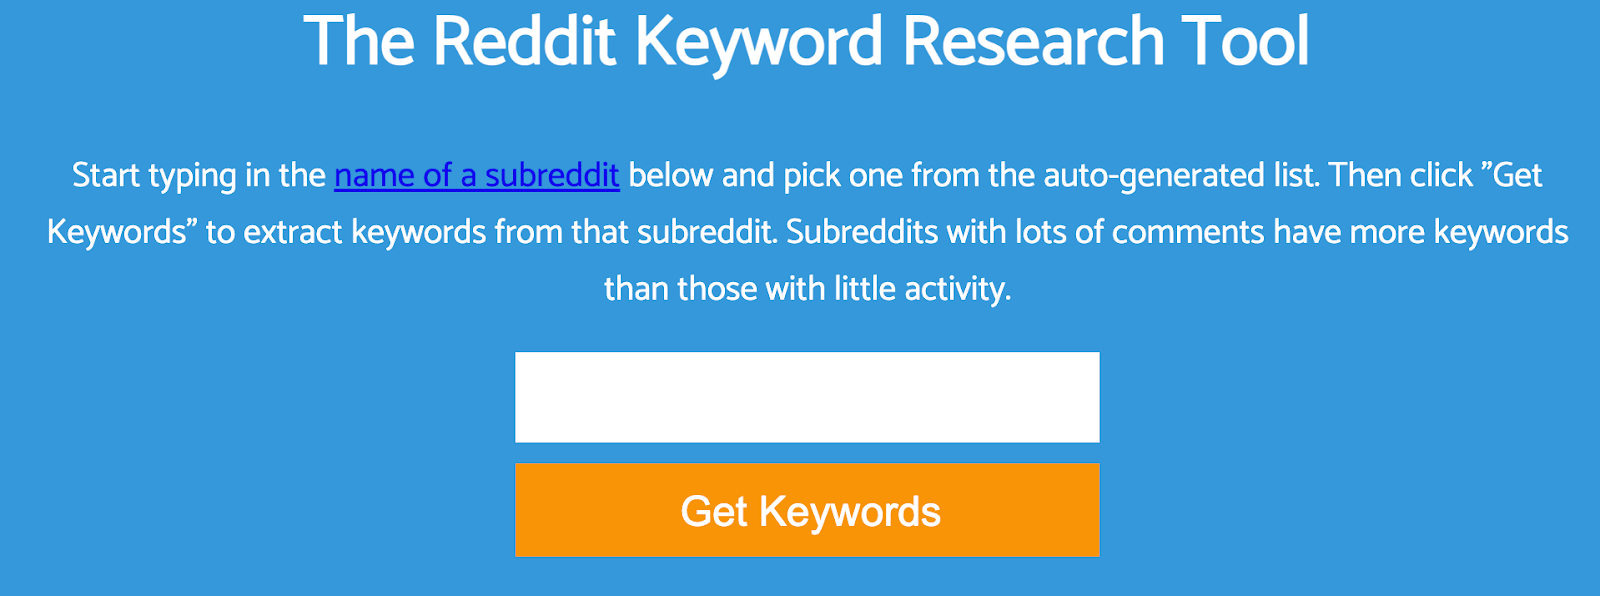 Keyworddit: herramienta de investigación en Reddit